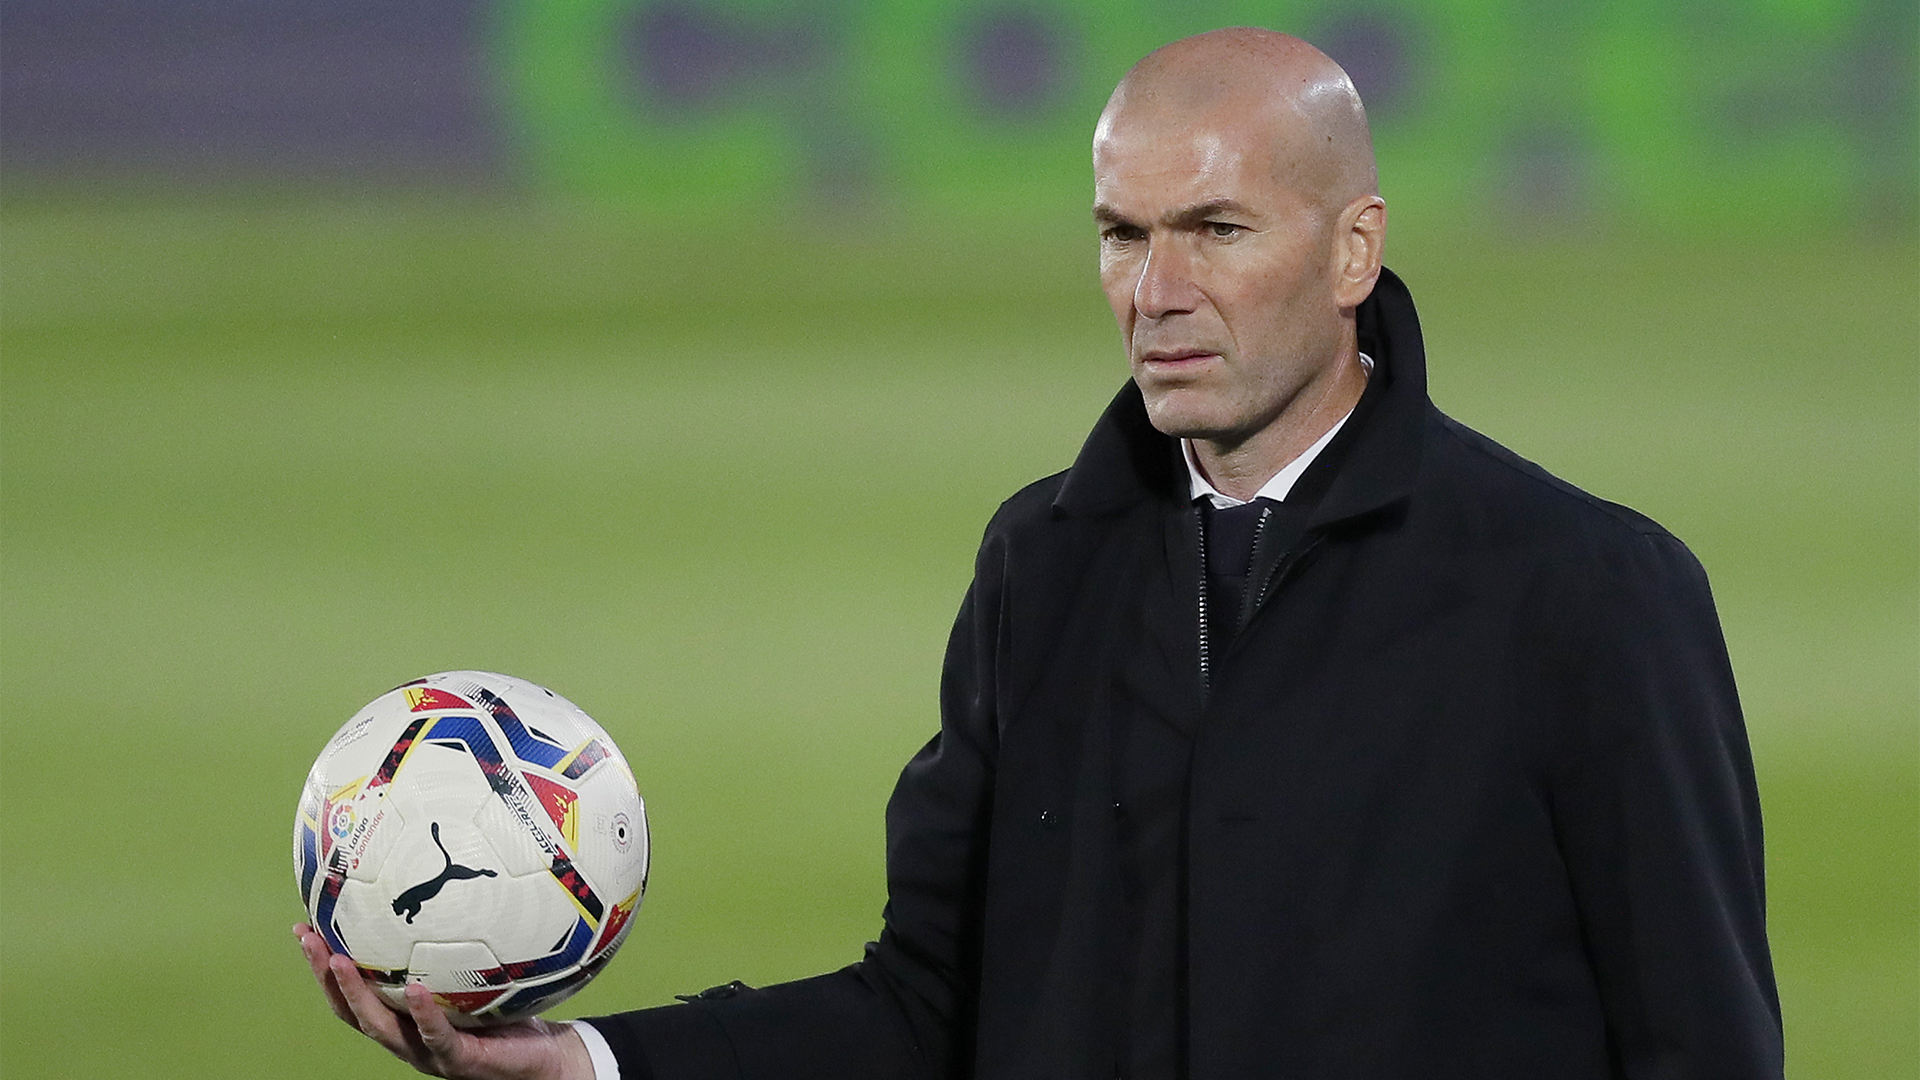 Dalla Francia sono sicuri: “Sarkozy tratta con Zidane”